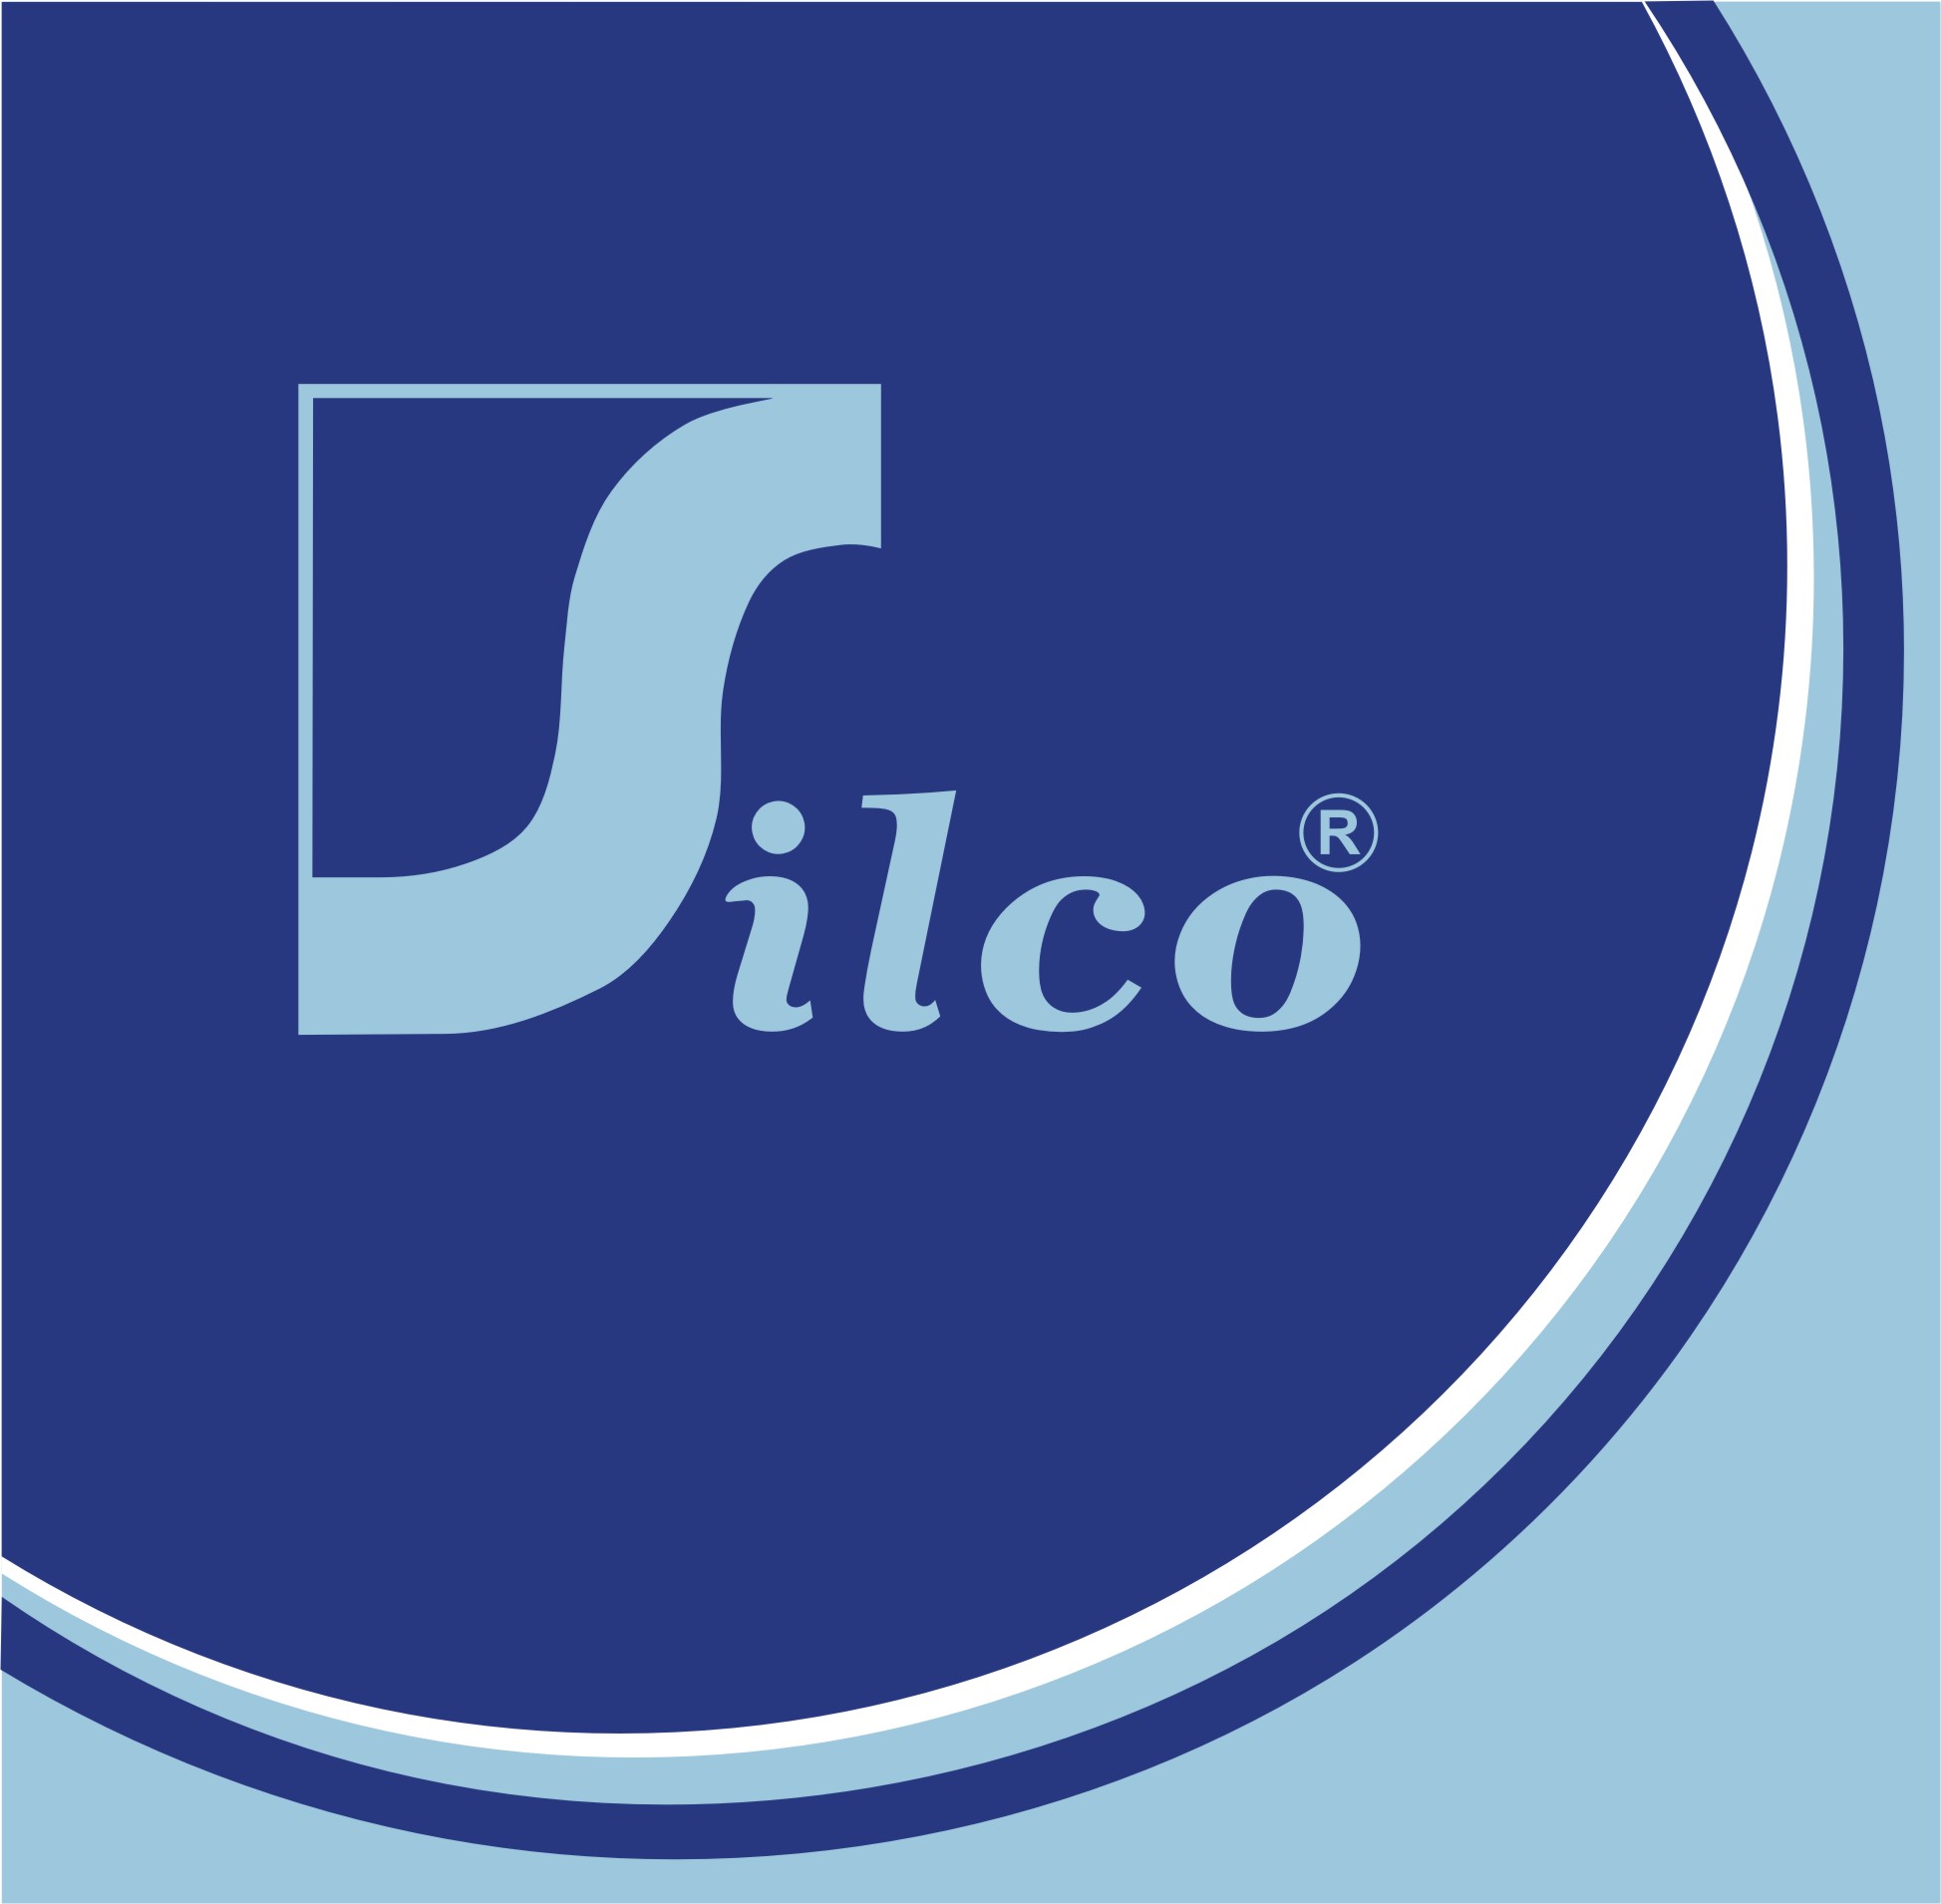 SilcoSilver logo